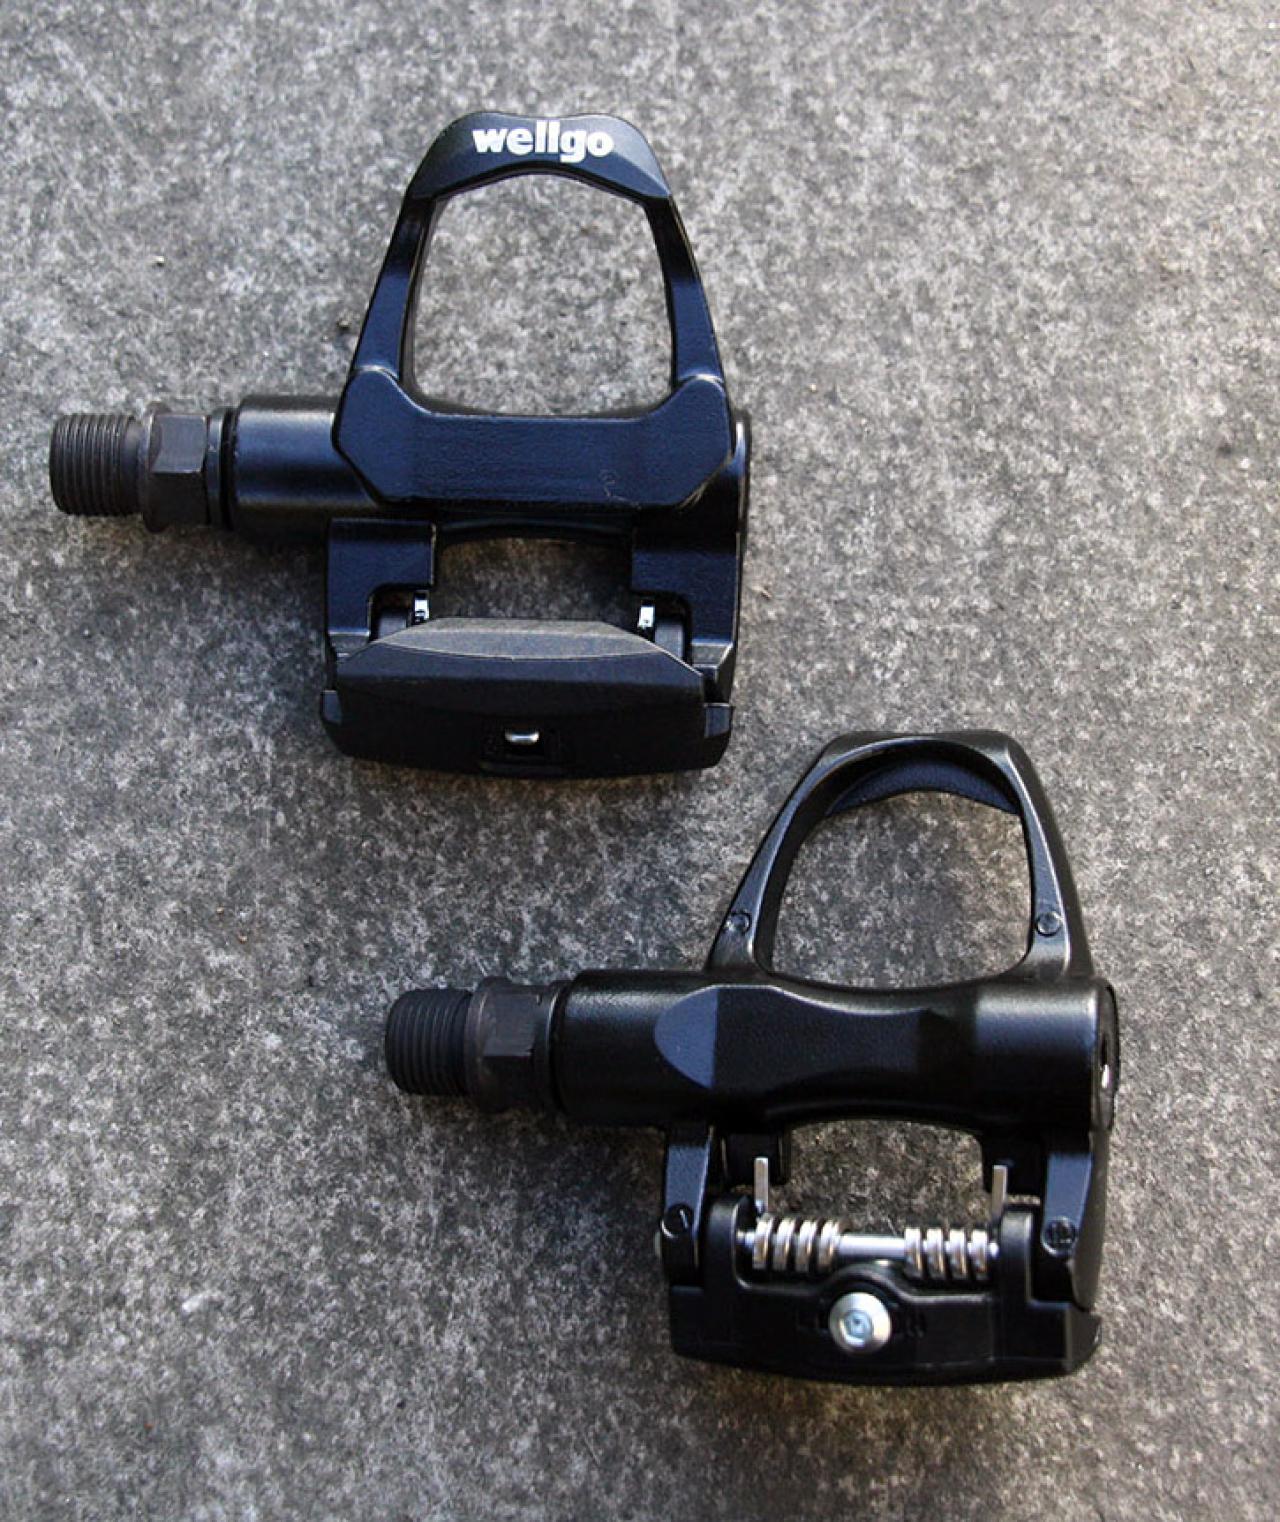 wellgo clip pedals